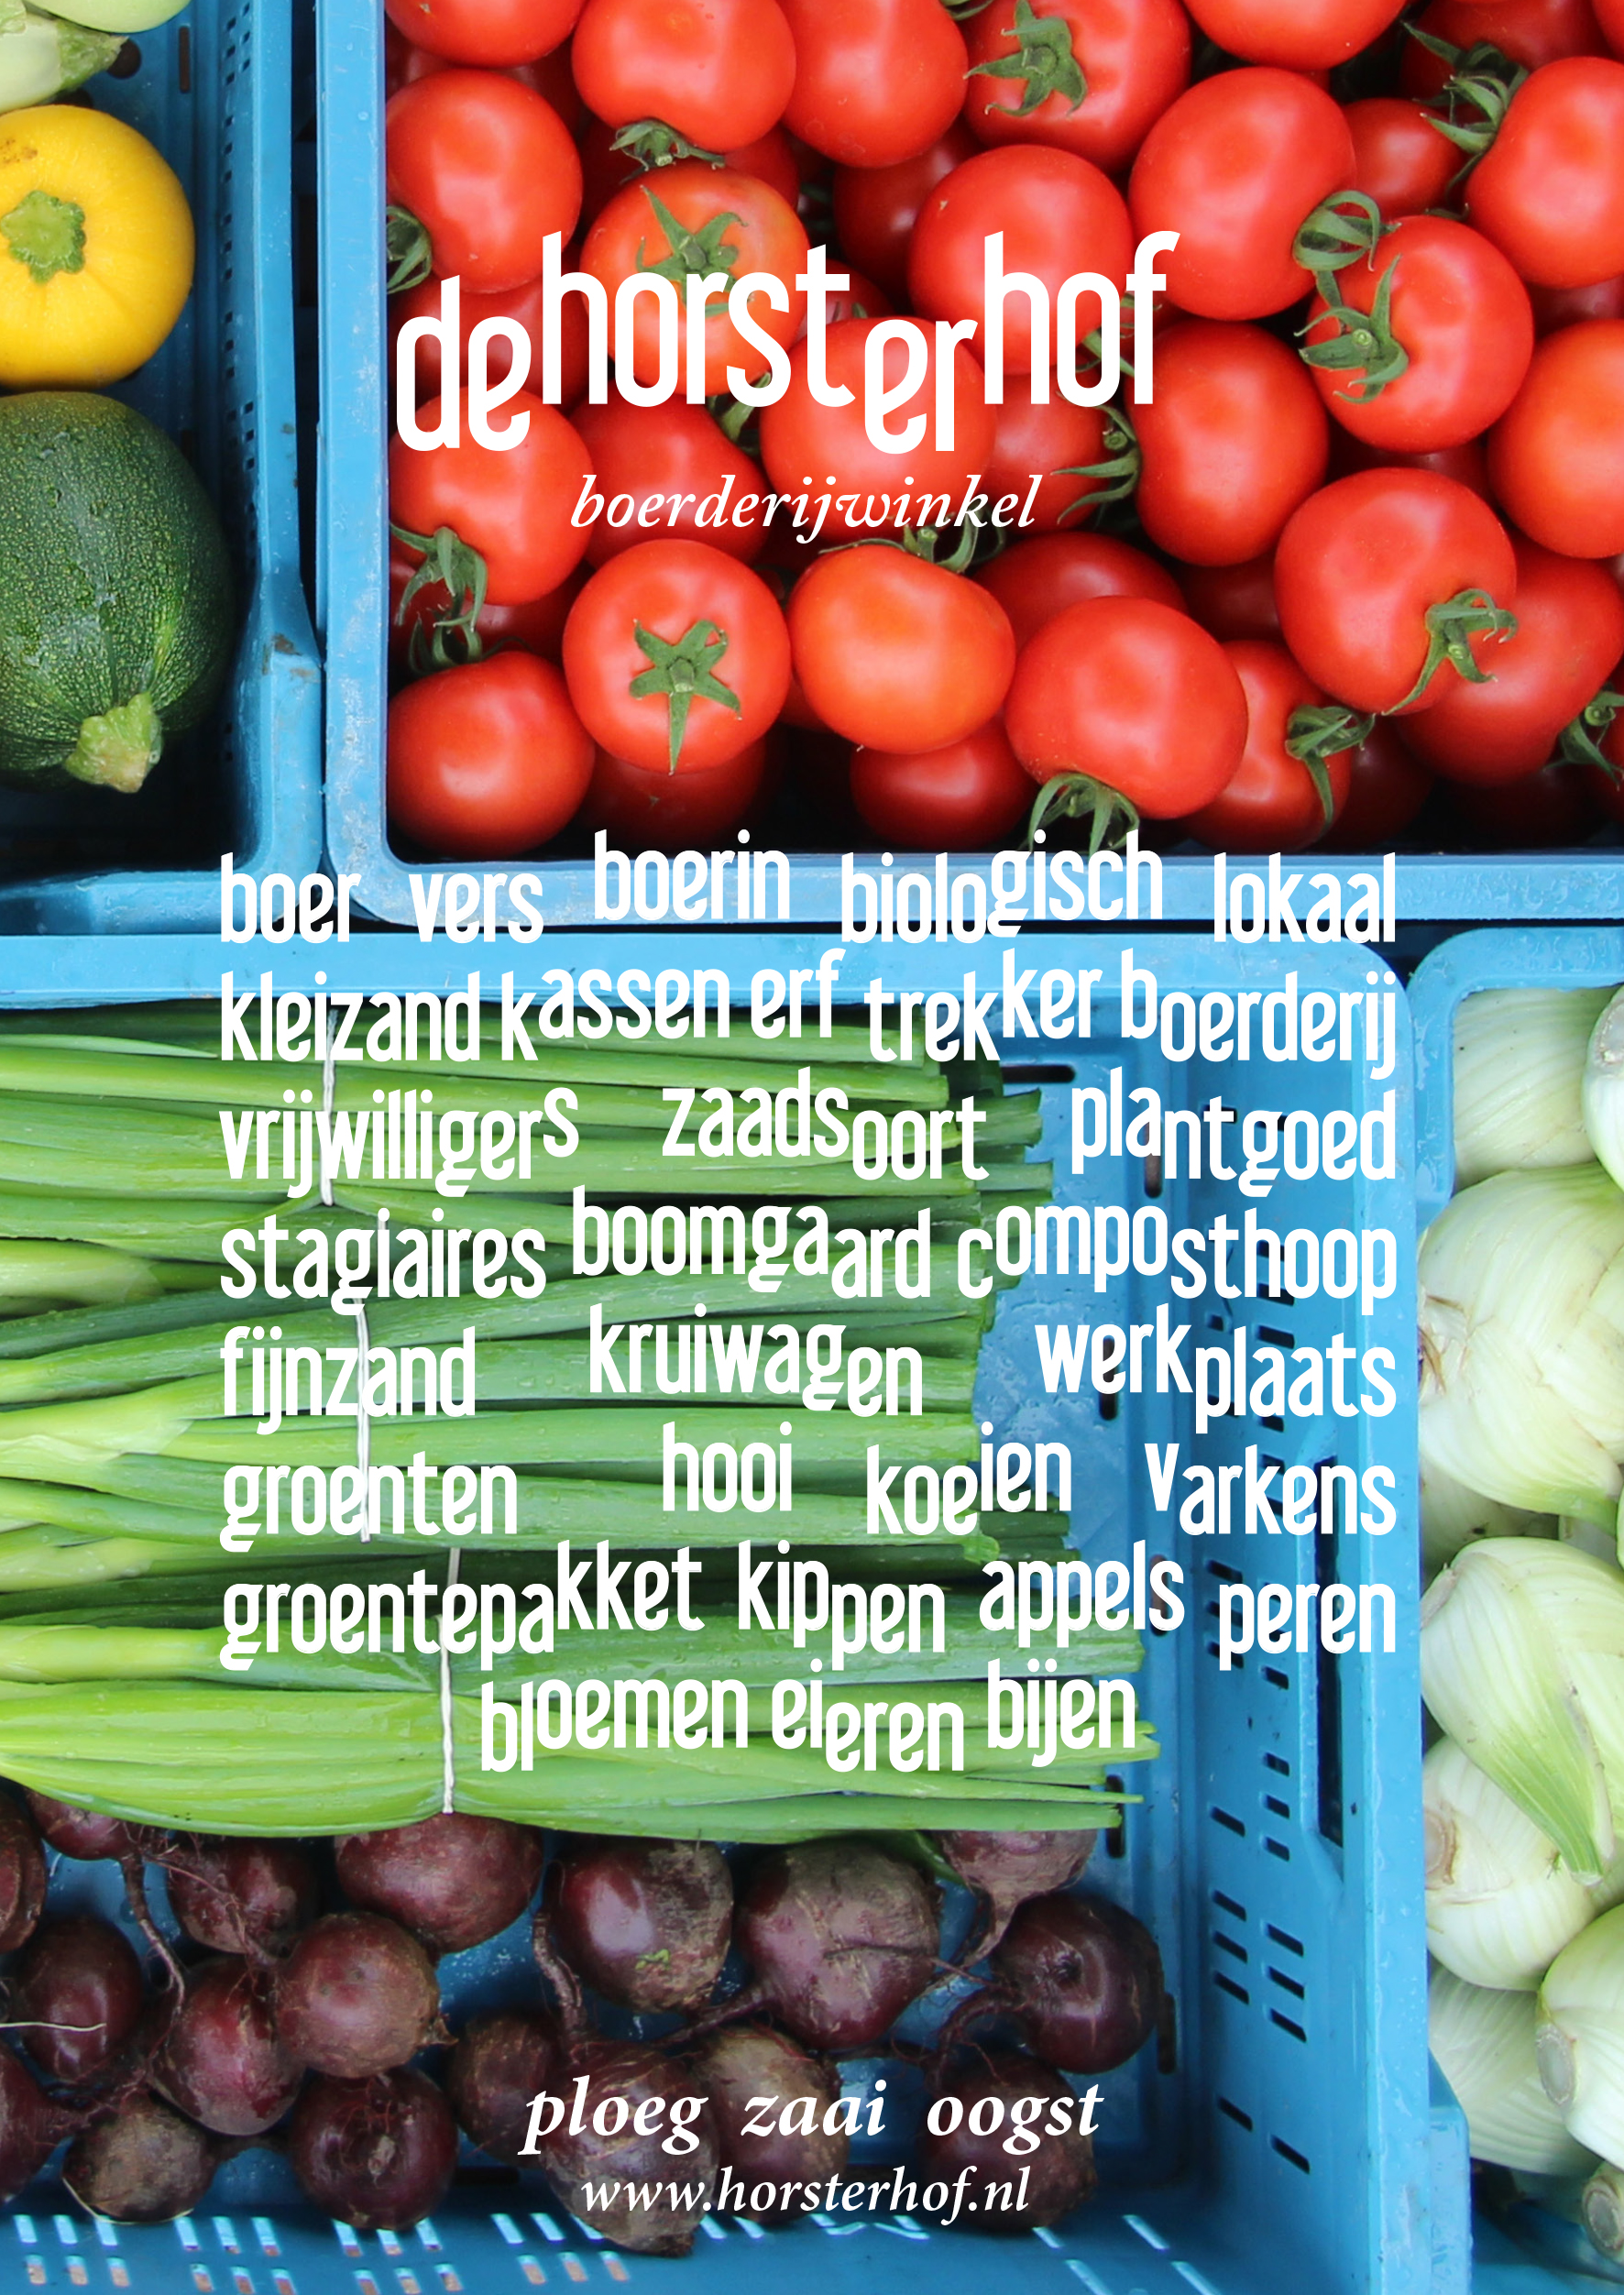 flyer van de boerderijwinkel met groentekratten en typografie